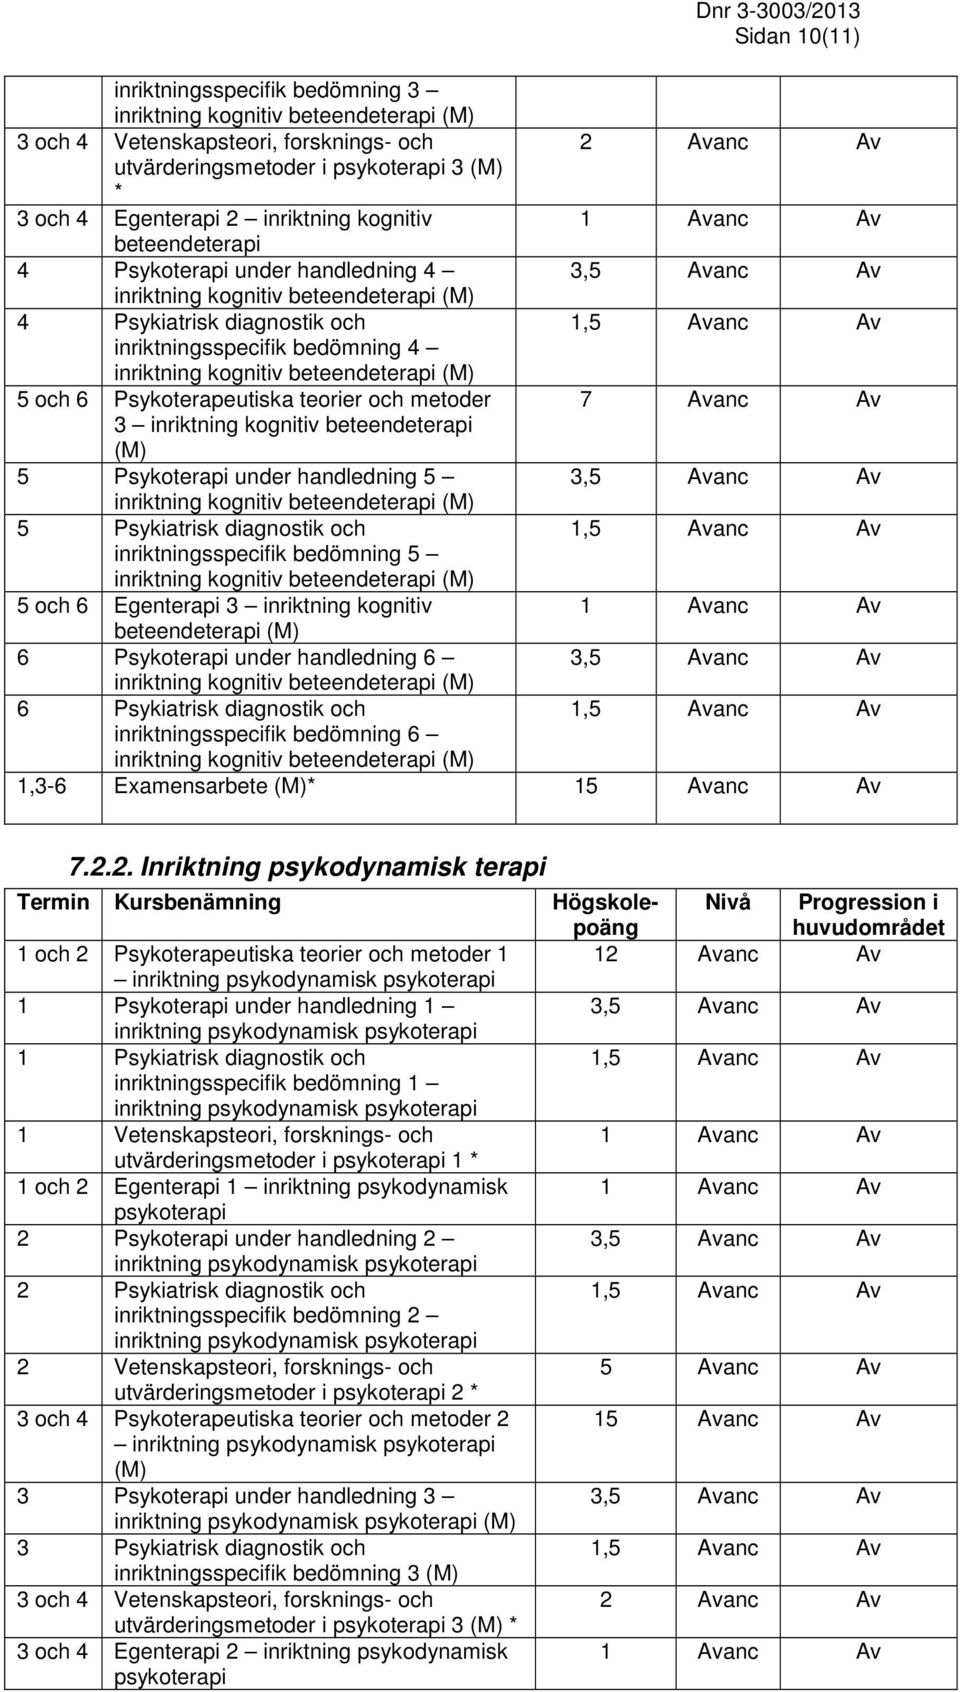 diagnostik och inriktningsspecifik bedömning 5 5 och 6 Egenterapi 3 inriktning kognitiv beteendeterapi 6 Psykoterapi under handledning 6 6 Psykiatrisk diagnostik och inriktningsspecifik bedömning 6